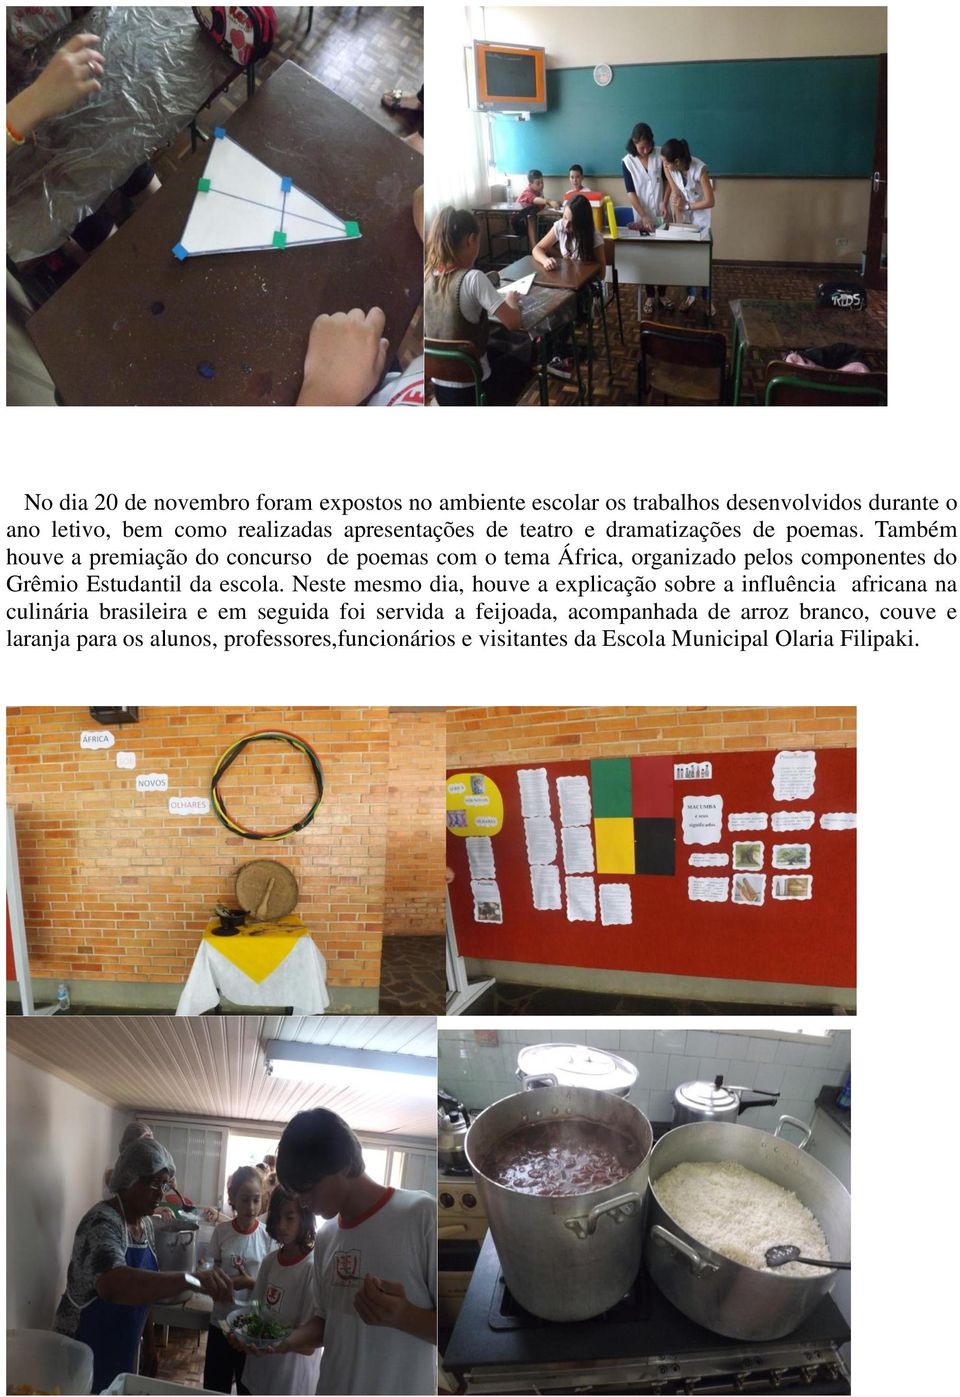 Também houve a premiação do concurso de poemas com o tema África, organizado pelos componentes do Grêmio Estudantil da escola.